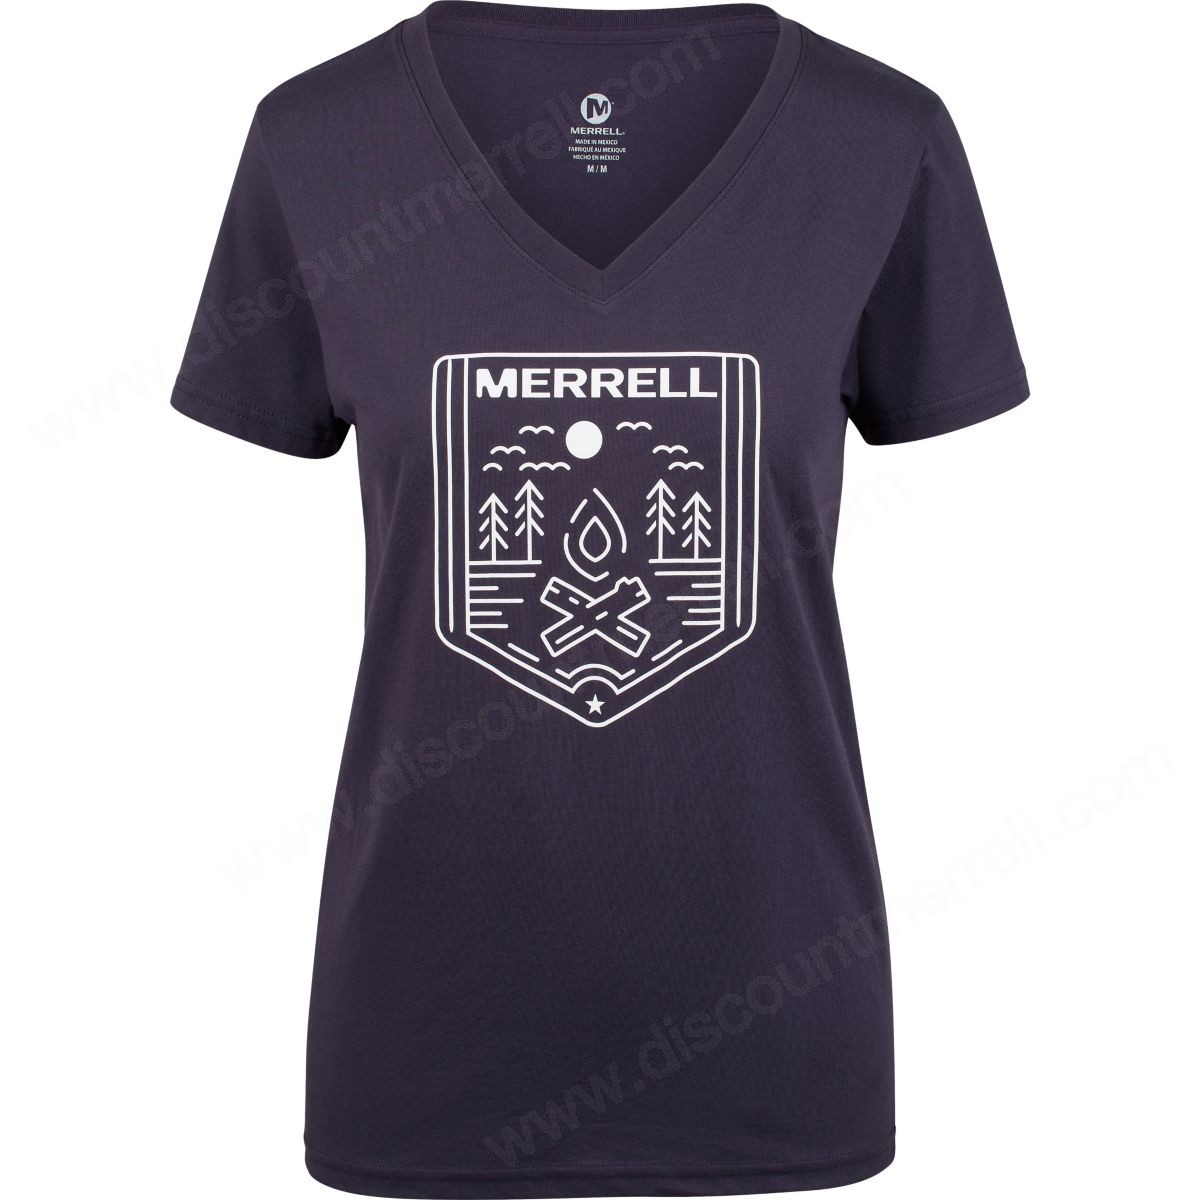 Merrell Women's Nefler Tee Navy/white - Merrell Women's Nefler Tee Navy/white